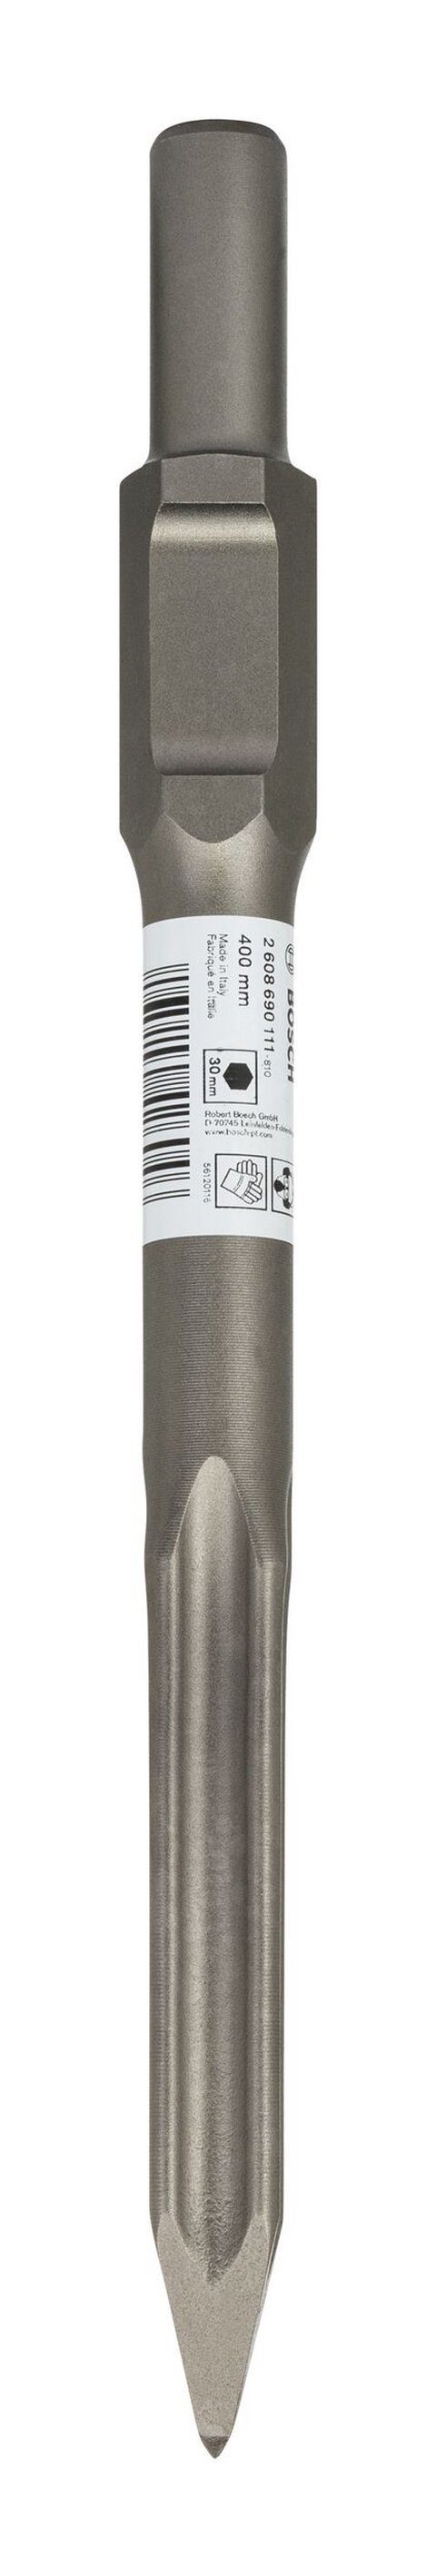 Steinbohrer, mit BOSCH 30-mm-Sechskantaufnahme - Spitzmeißel mm 400